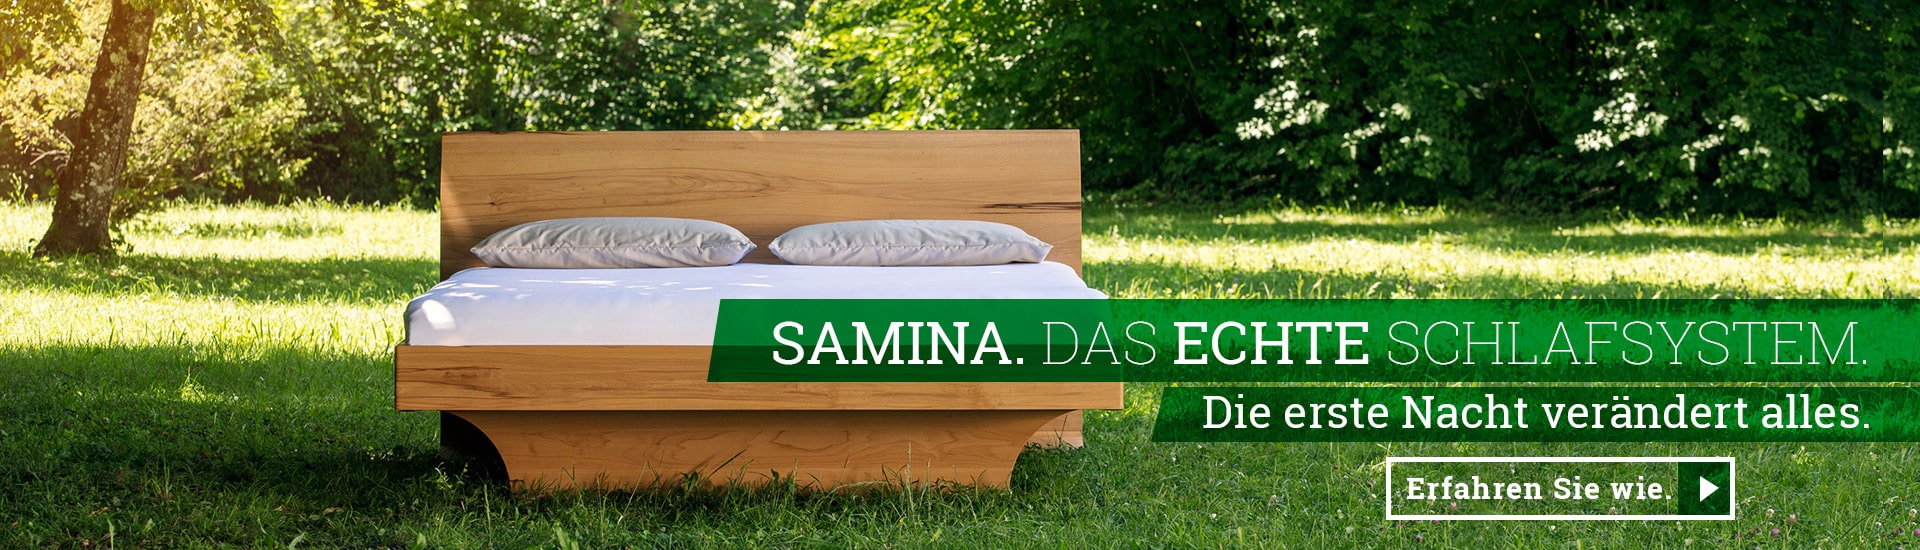 SAMINA Hotels buchen - Finden Sie Hotels mit SAMINA Schlafsystemen